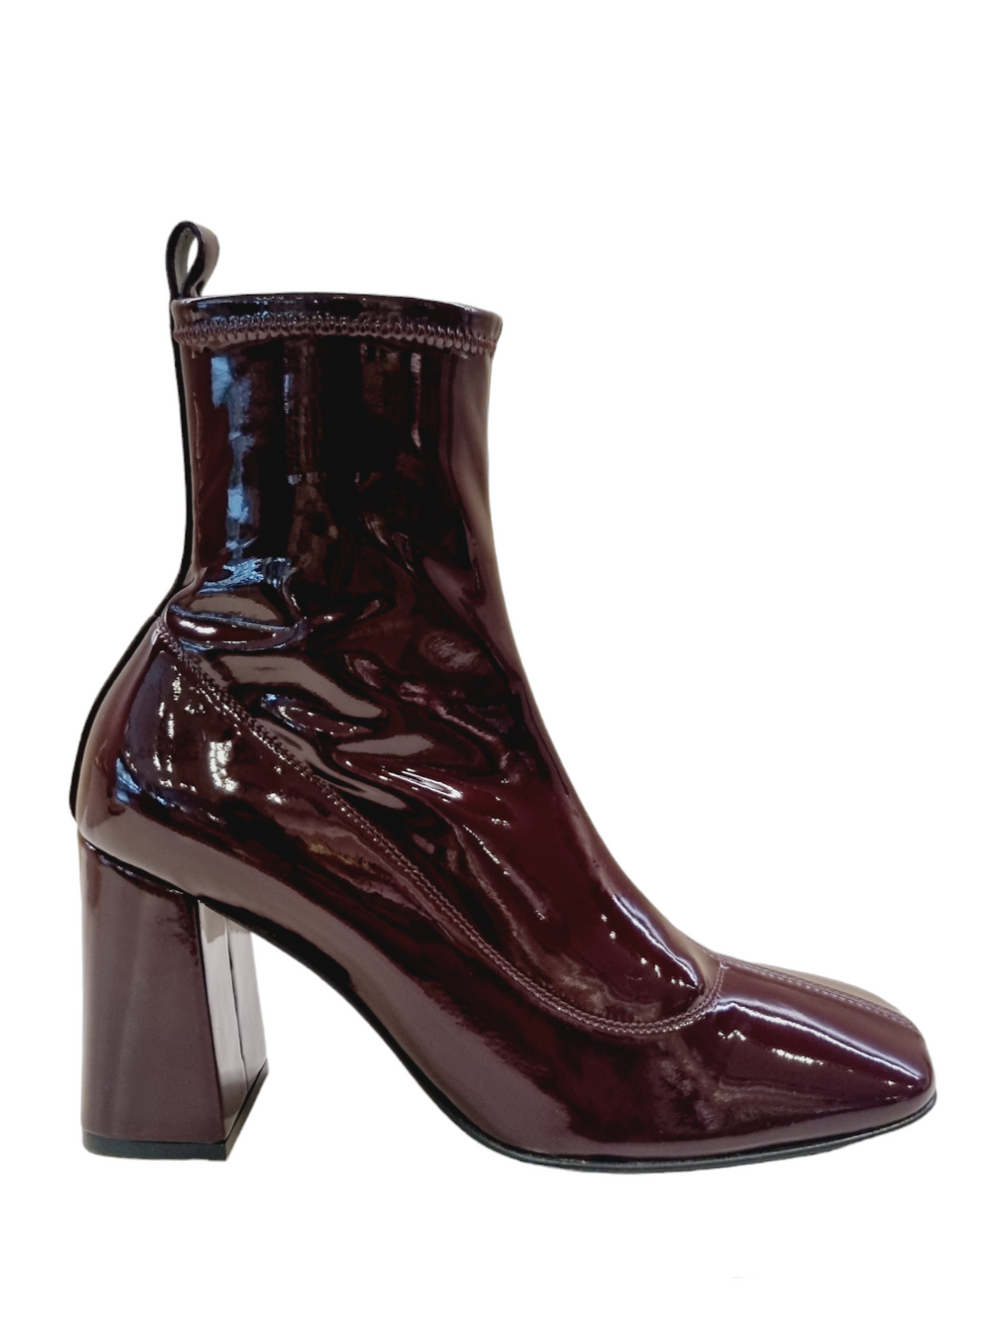 Sr Alicia Burgundy Patent Boots - SERGIO ROSSI - Liberty Shoes Australia